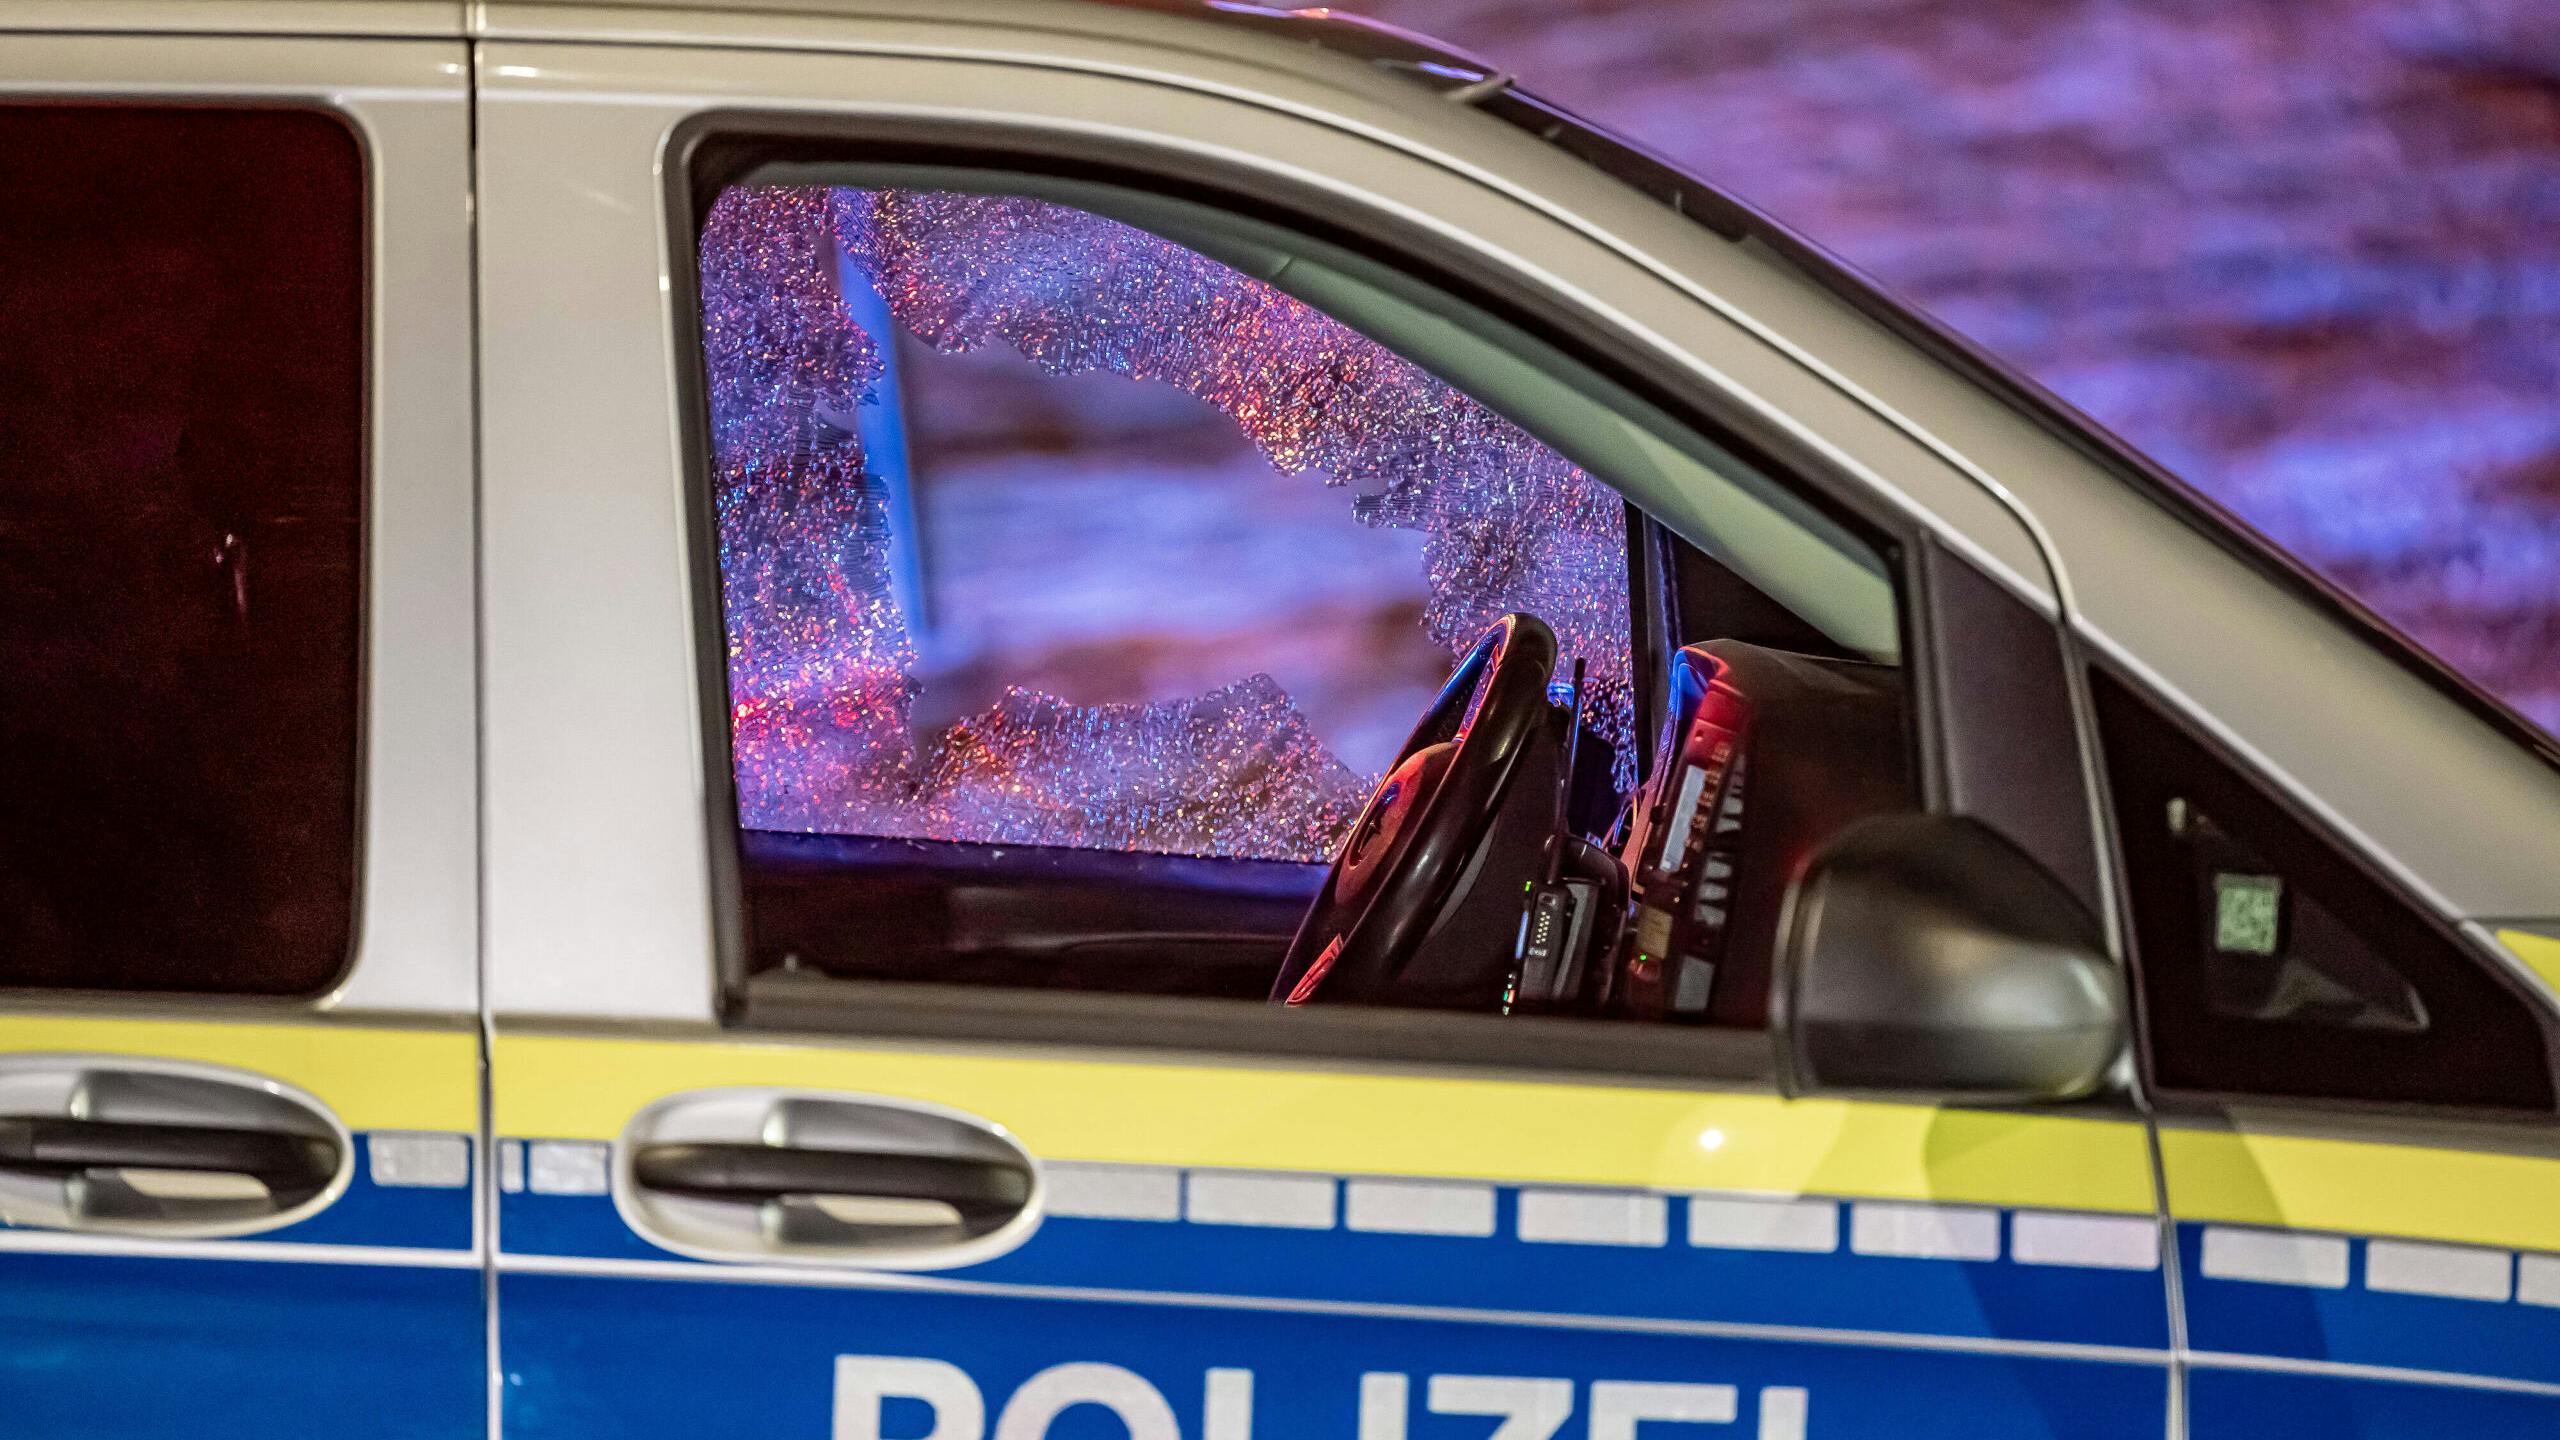  Tatverdächtiger bei Schusswechsel mit Polizei verletzt In Plettenberg kam es nach einem Überfall auf einen Döner-Imbiss zu einem Schusswechsel. Der mutmaßliche Täter konnte zunächst flüchten, wurde aber etwa 700 Meter vom Tatort entfernt von der Polizei aufgehalten. Es kam zu einem Schusswechsel, bei dem der mutmaßliche Täter schwerverletzt wurde. Für seinen Transport ins Krankenhaus wurde ein Rettungshubschrauber eingesetzt. Plettenberg Märkischer Kreis Nordrhein-Westfalen *** Suspect injured in shootout with police In Plettenberg, after a robbery of a kebab snack bar, there was an exchange of gunfire The suspected perpetrator was initially able to flee, but was stopped by the police about 700 meters from the scene of the crime